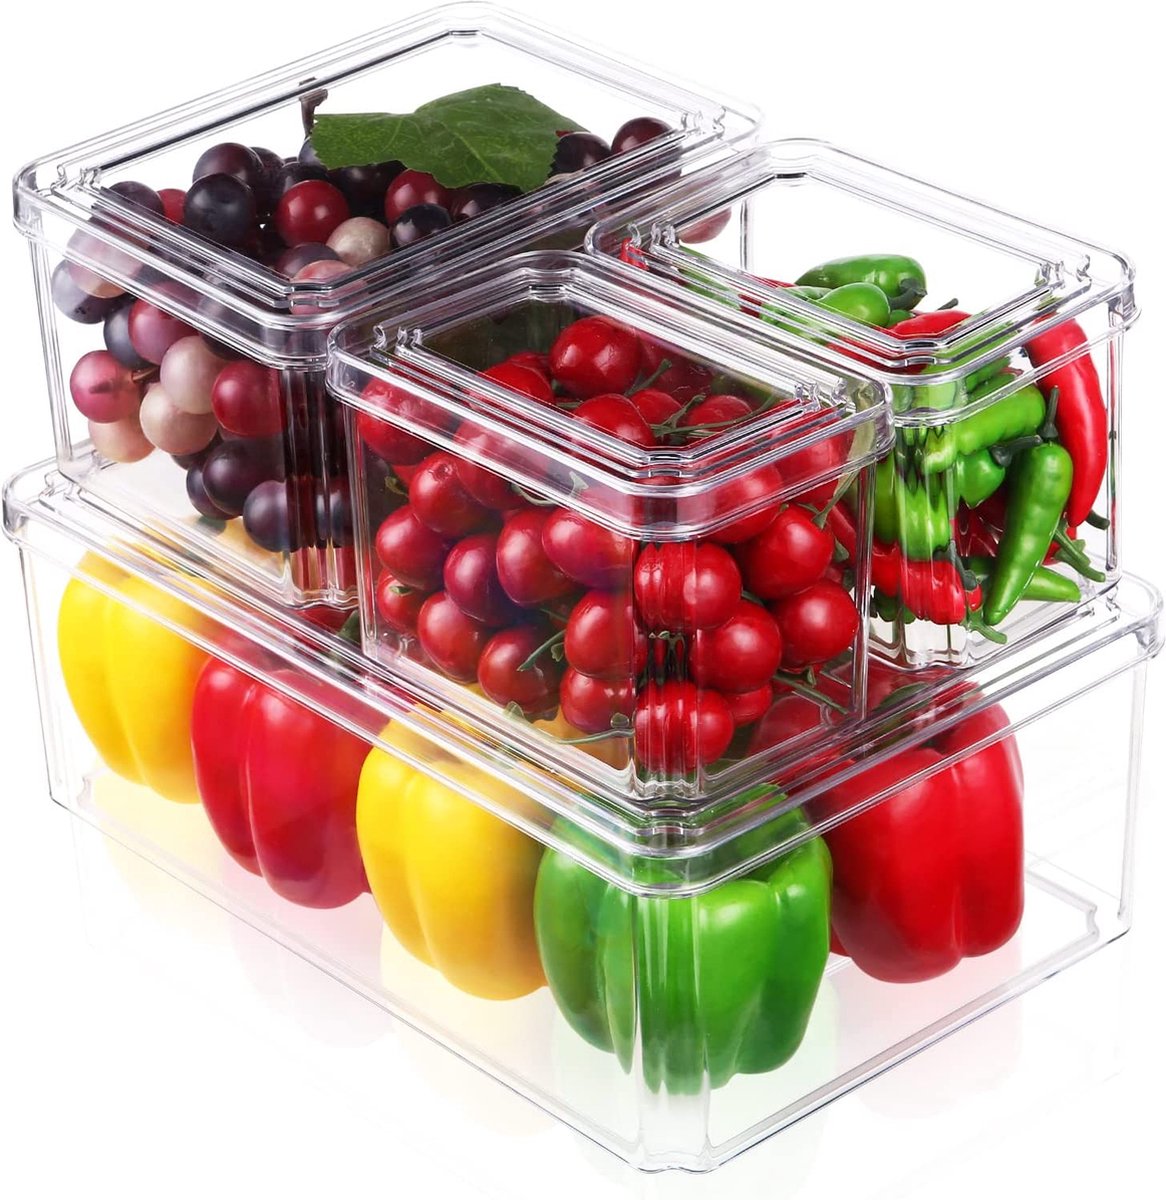 JOSPL Koelkastorganizer, set van 4 kleine koelkastboxen, voorraadcontainer, doorzichtige, stapelbare opbergdoos, organizer voor keuken, koelkast, kast, voorraadkamer